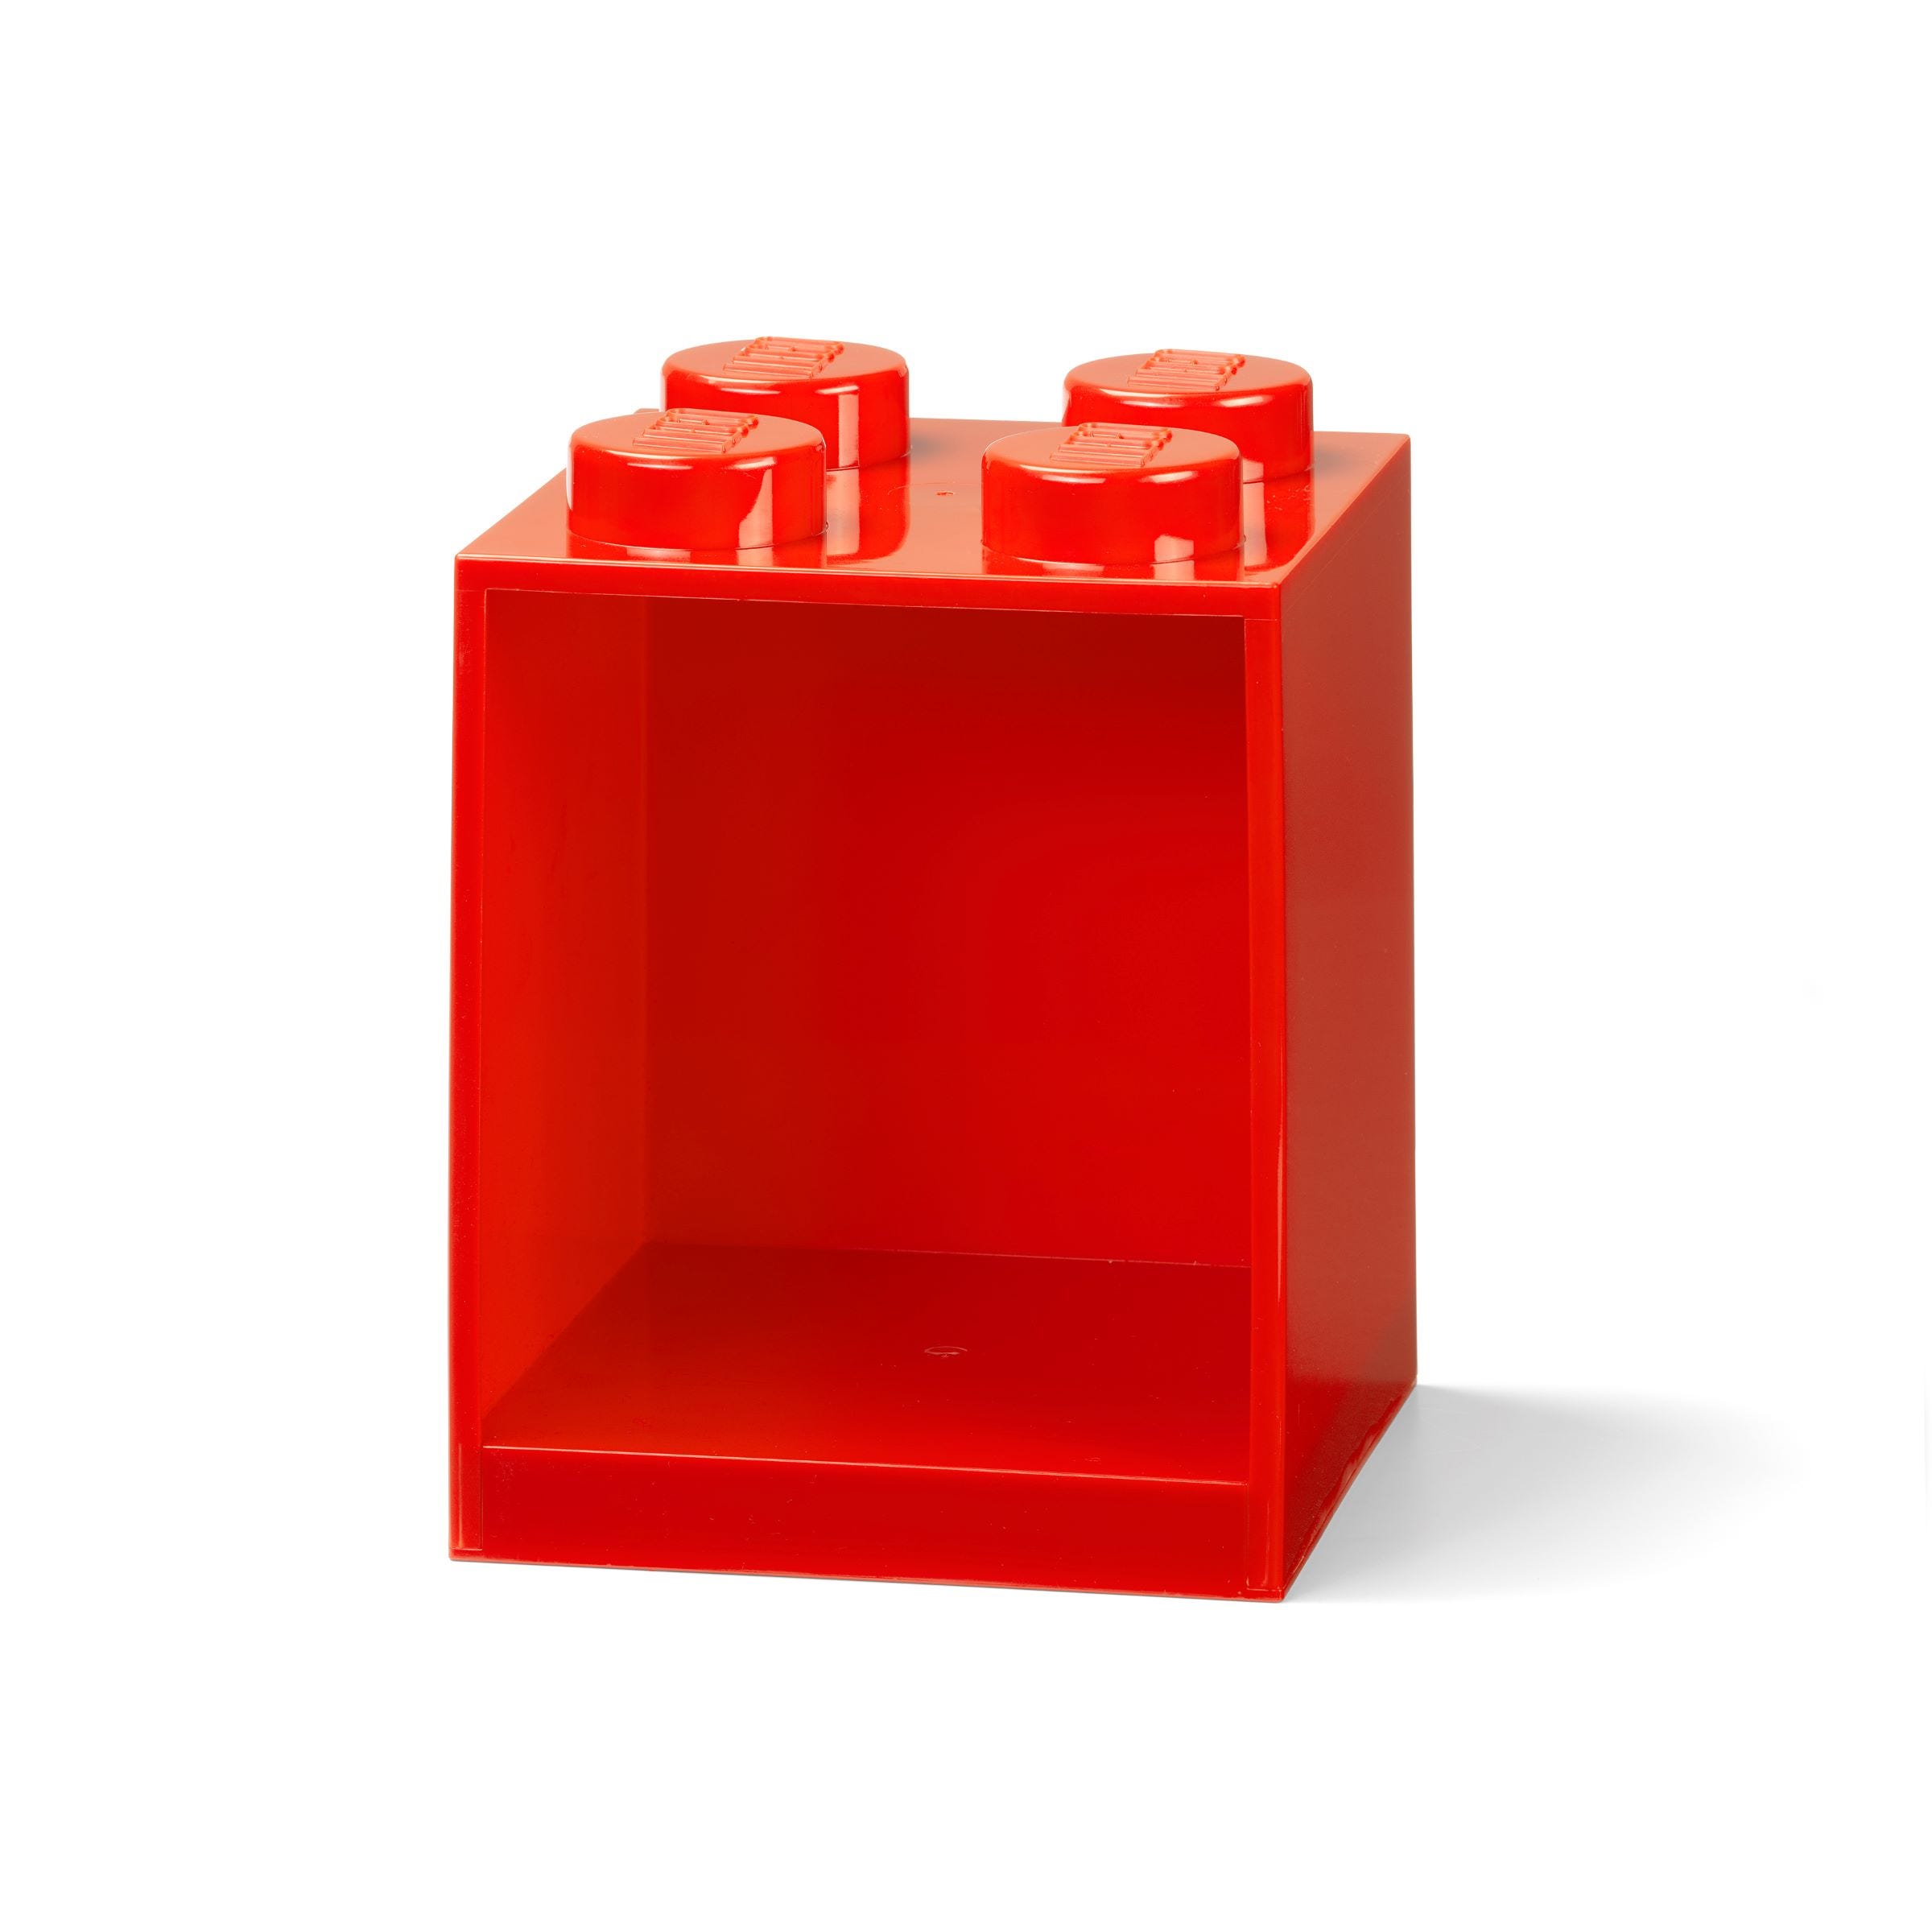 Фото - Конструктор Lego Półka w kształcie klocka z czterema wypustkami - jaskrawoczerwona 